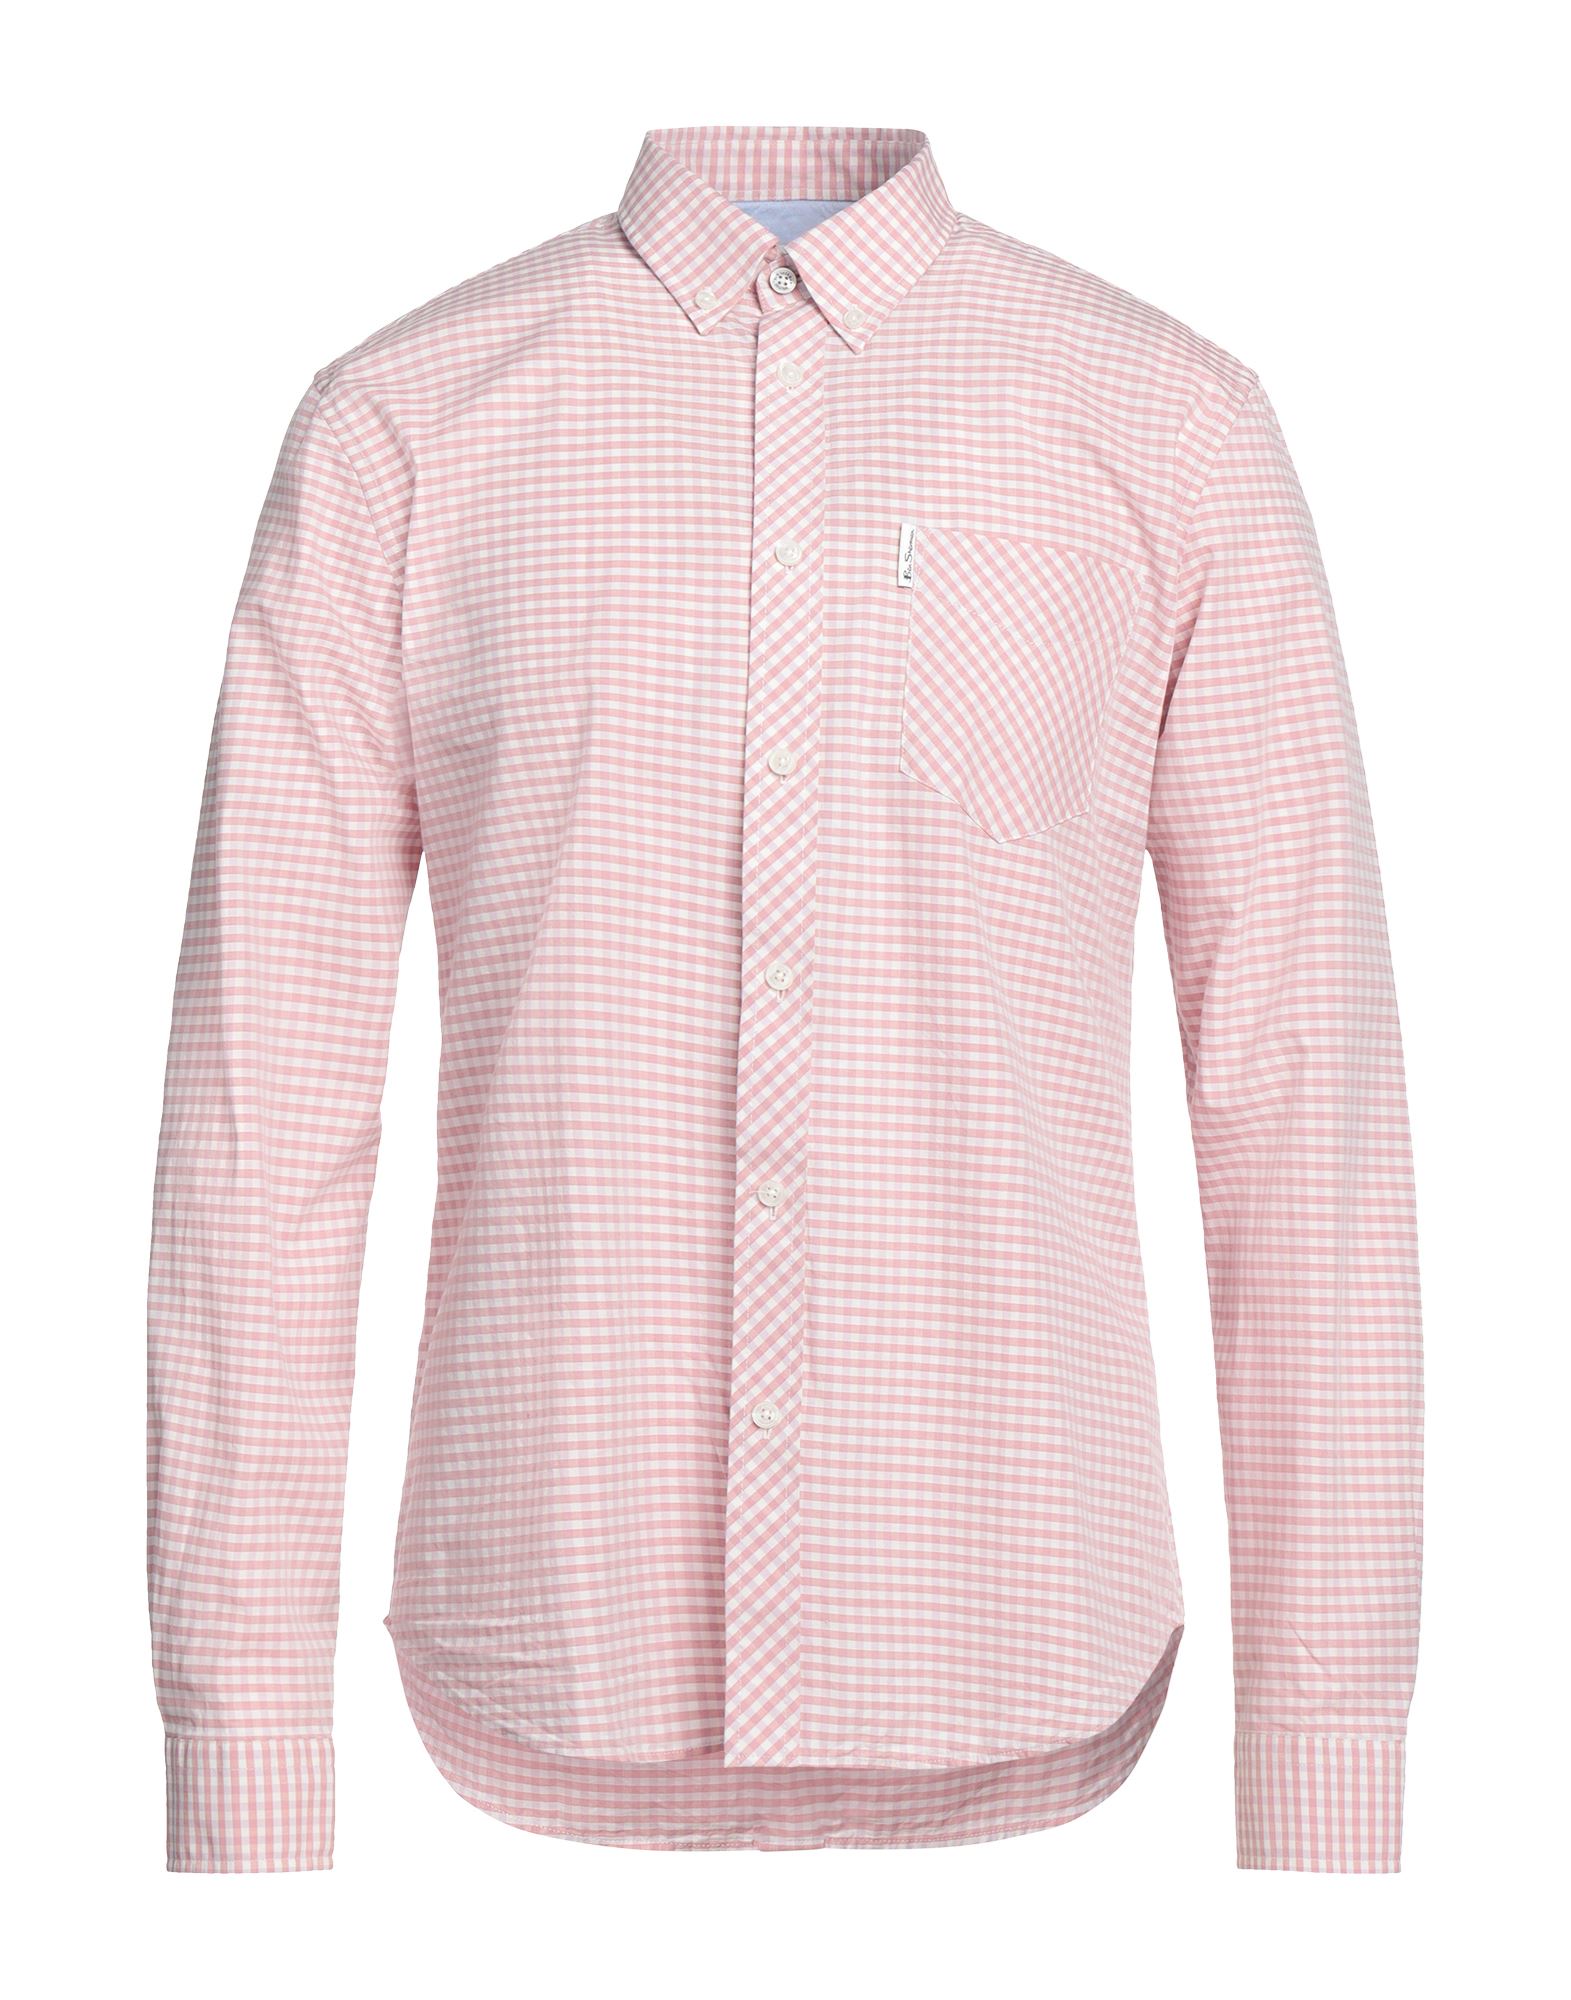 Ben Sherman Shirts In Pink